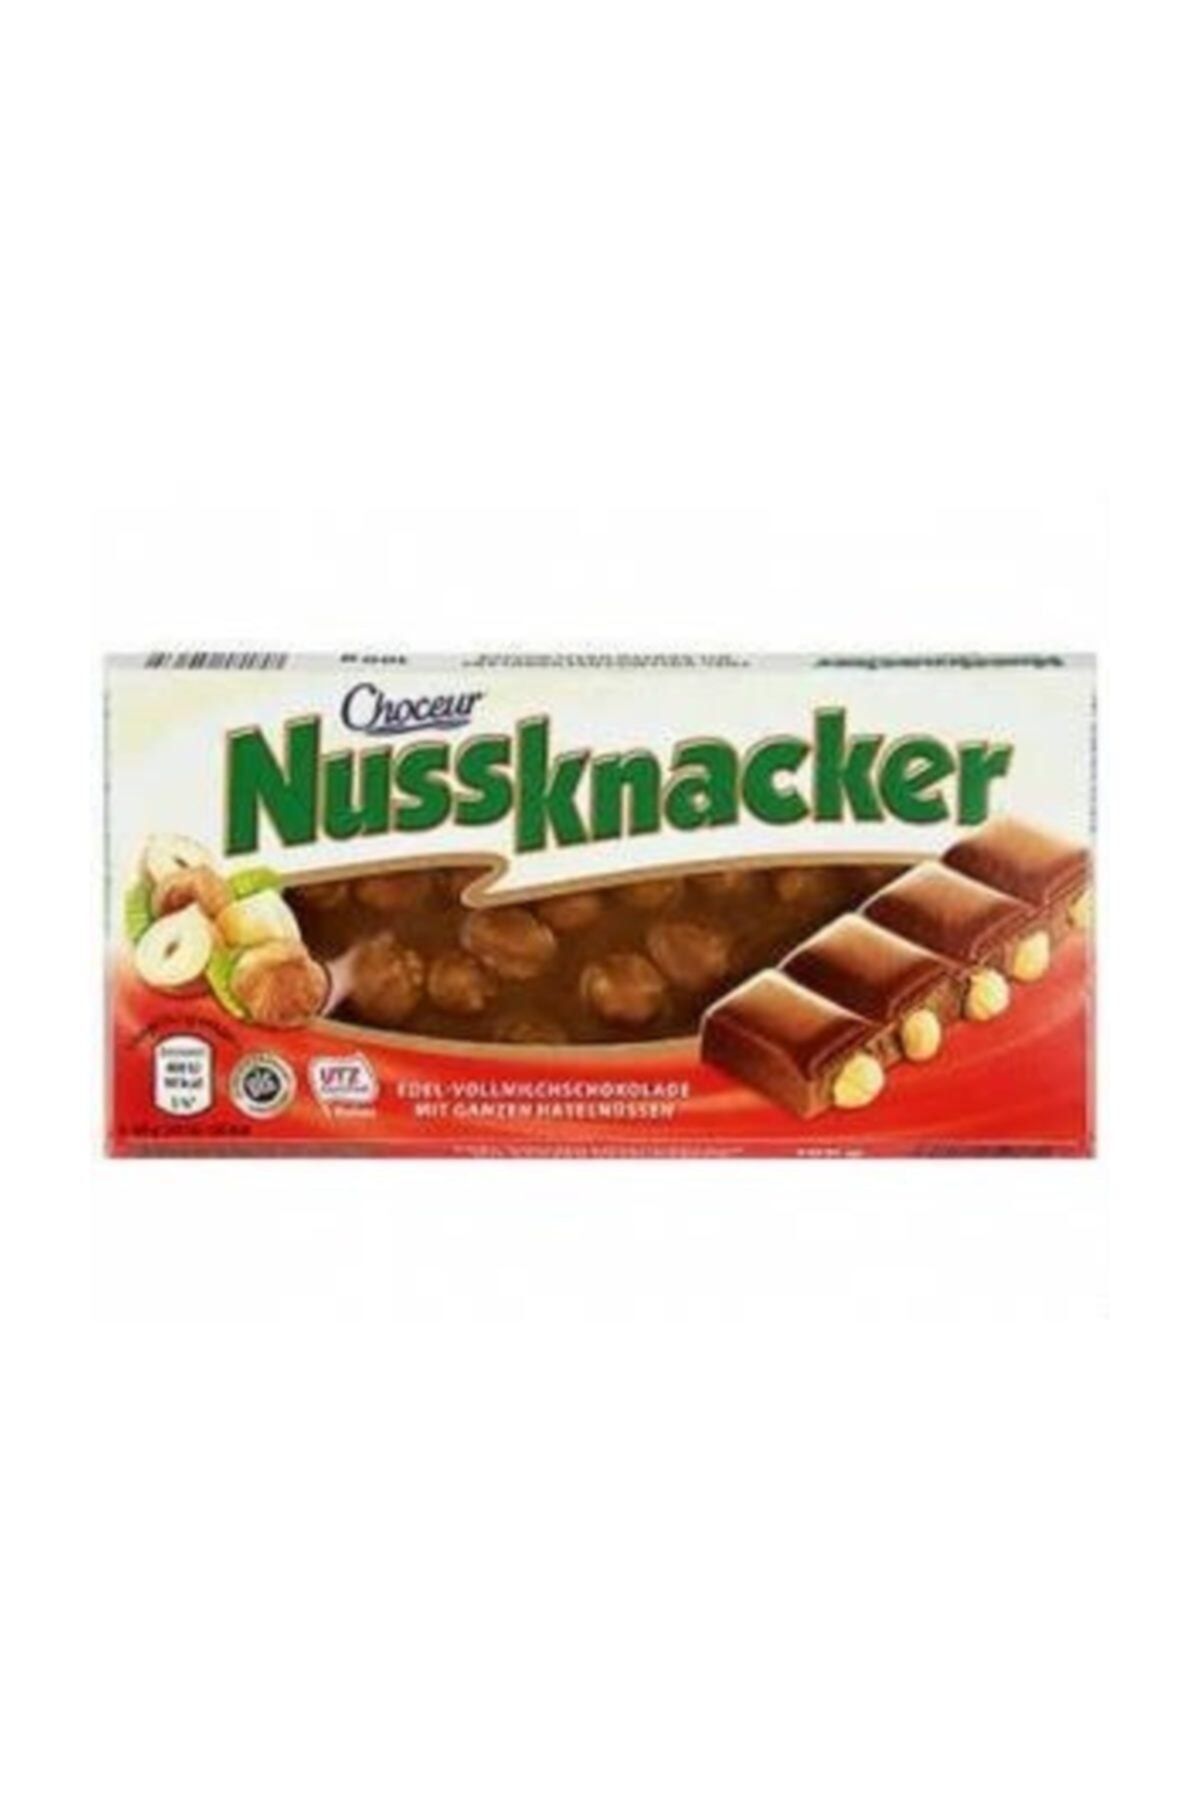 Choceur Nussknacker Bütün Fındıklı Çikolata 100g Orijinal Alman Çikolatası